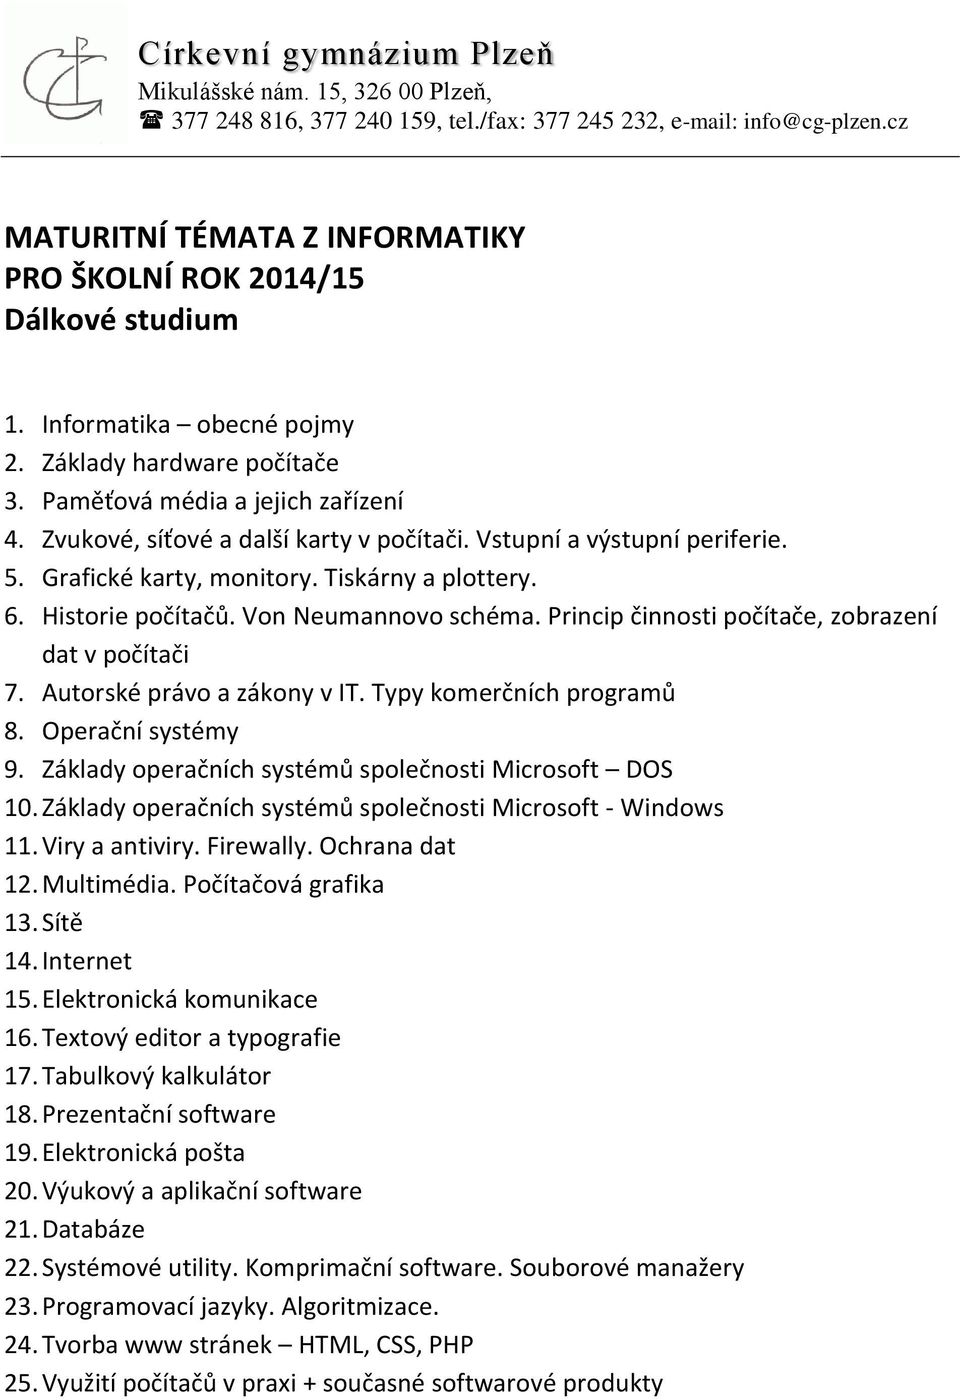 Typy komerčních programů 8. Operační systémy 9. Základy operačních systémů společnosti Microsoft DOS 10. Základy operačních systémů společnosti Microsoft - Windows 11. Viry a antiviry. Firewally.